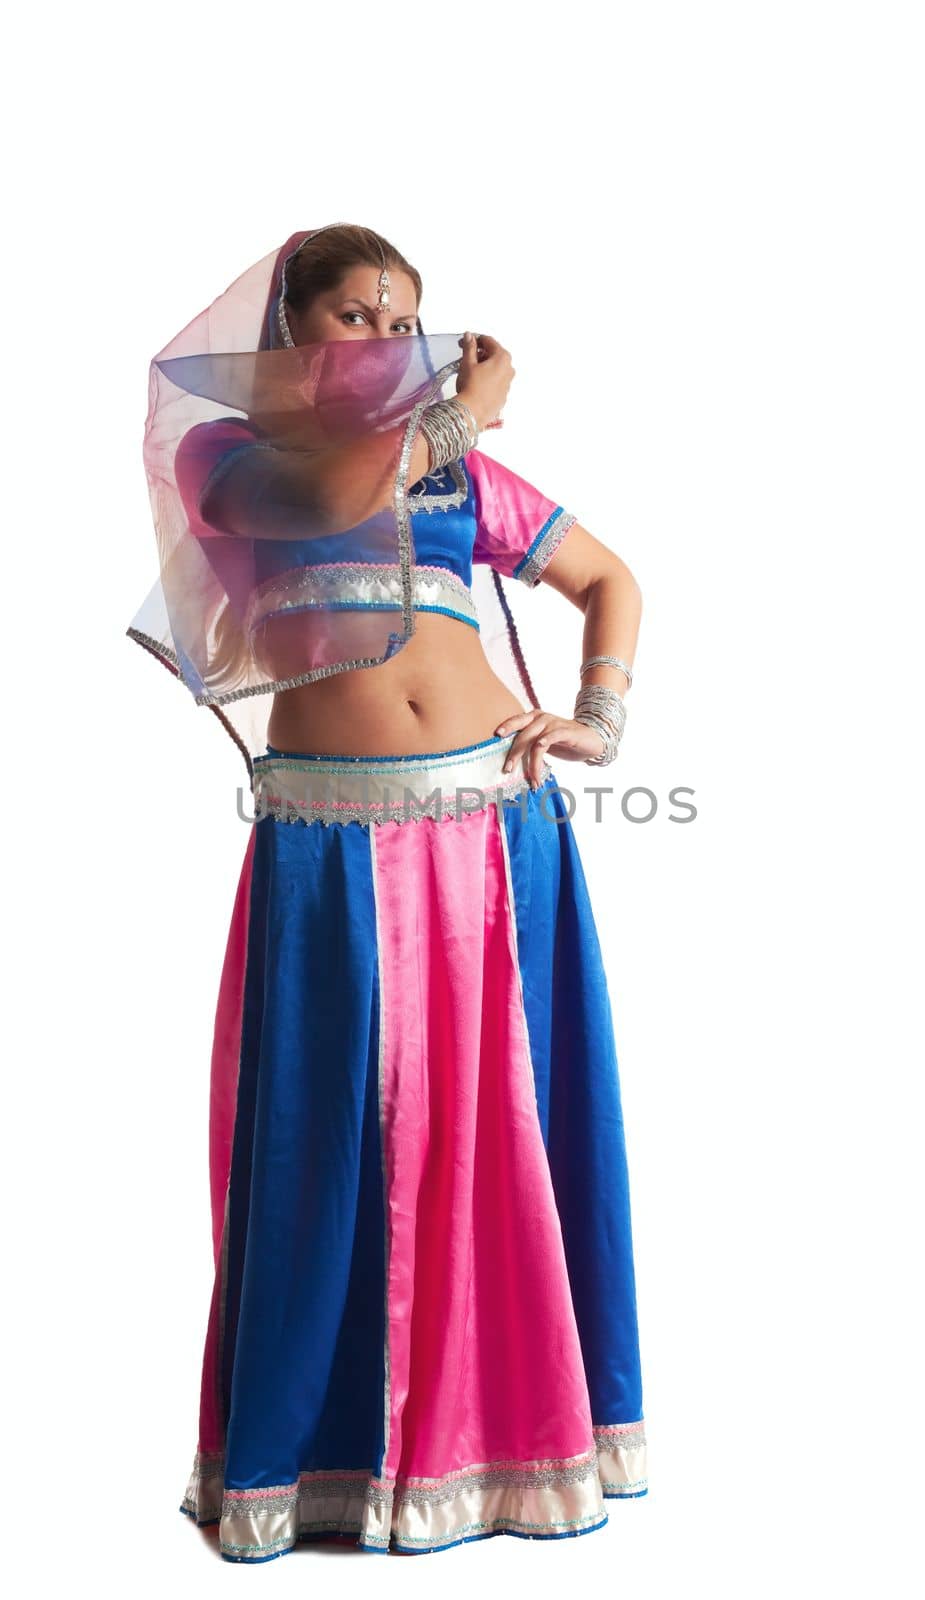 Woman posing in arabian costume by rivertime